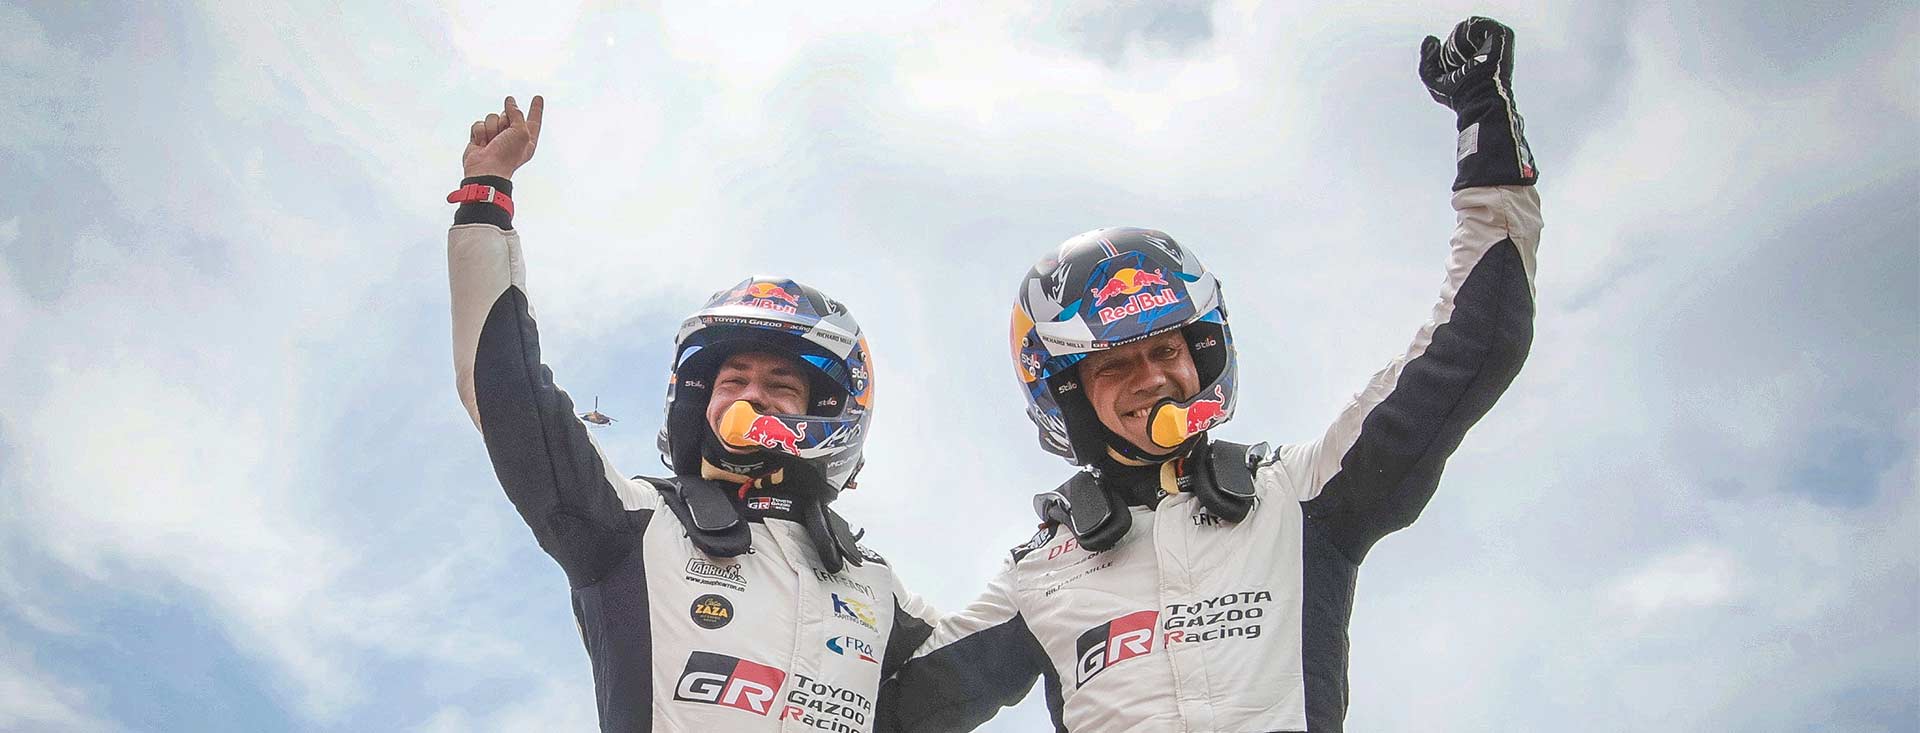 WRC 第5戦 ラリー・ポルトガル オジエが前戦クロアチアに続き今シーズン2勝目を獲得 エバンスは総合6位でドライバー選手権2位の座を守る